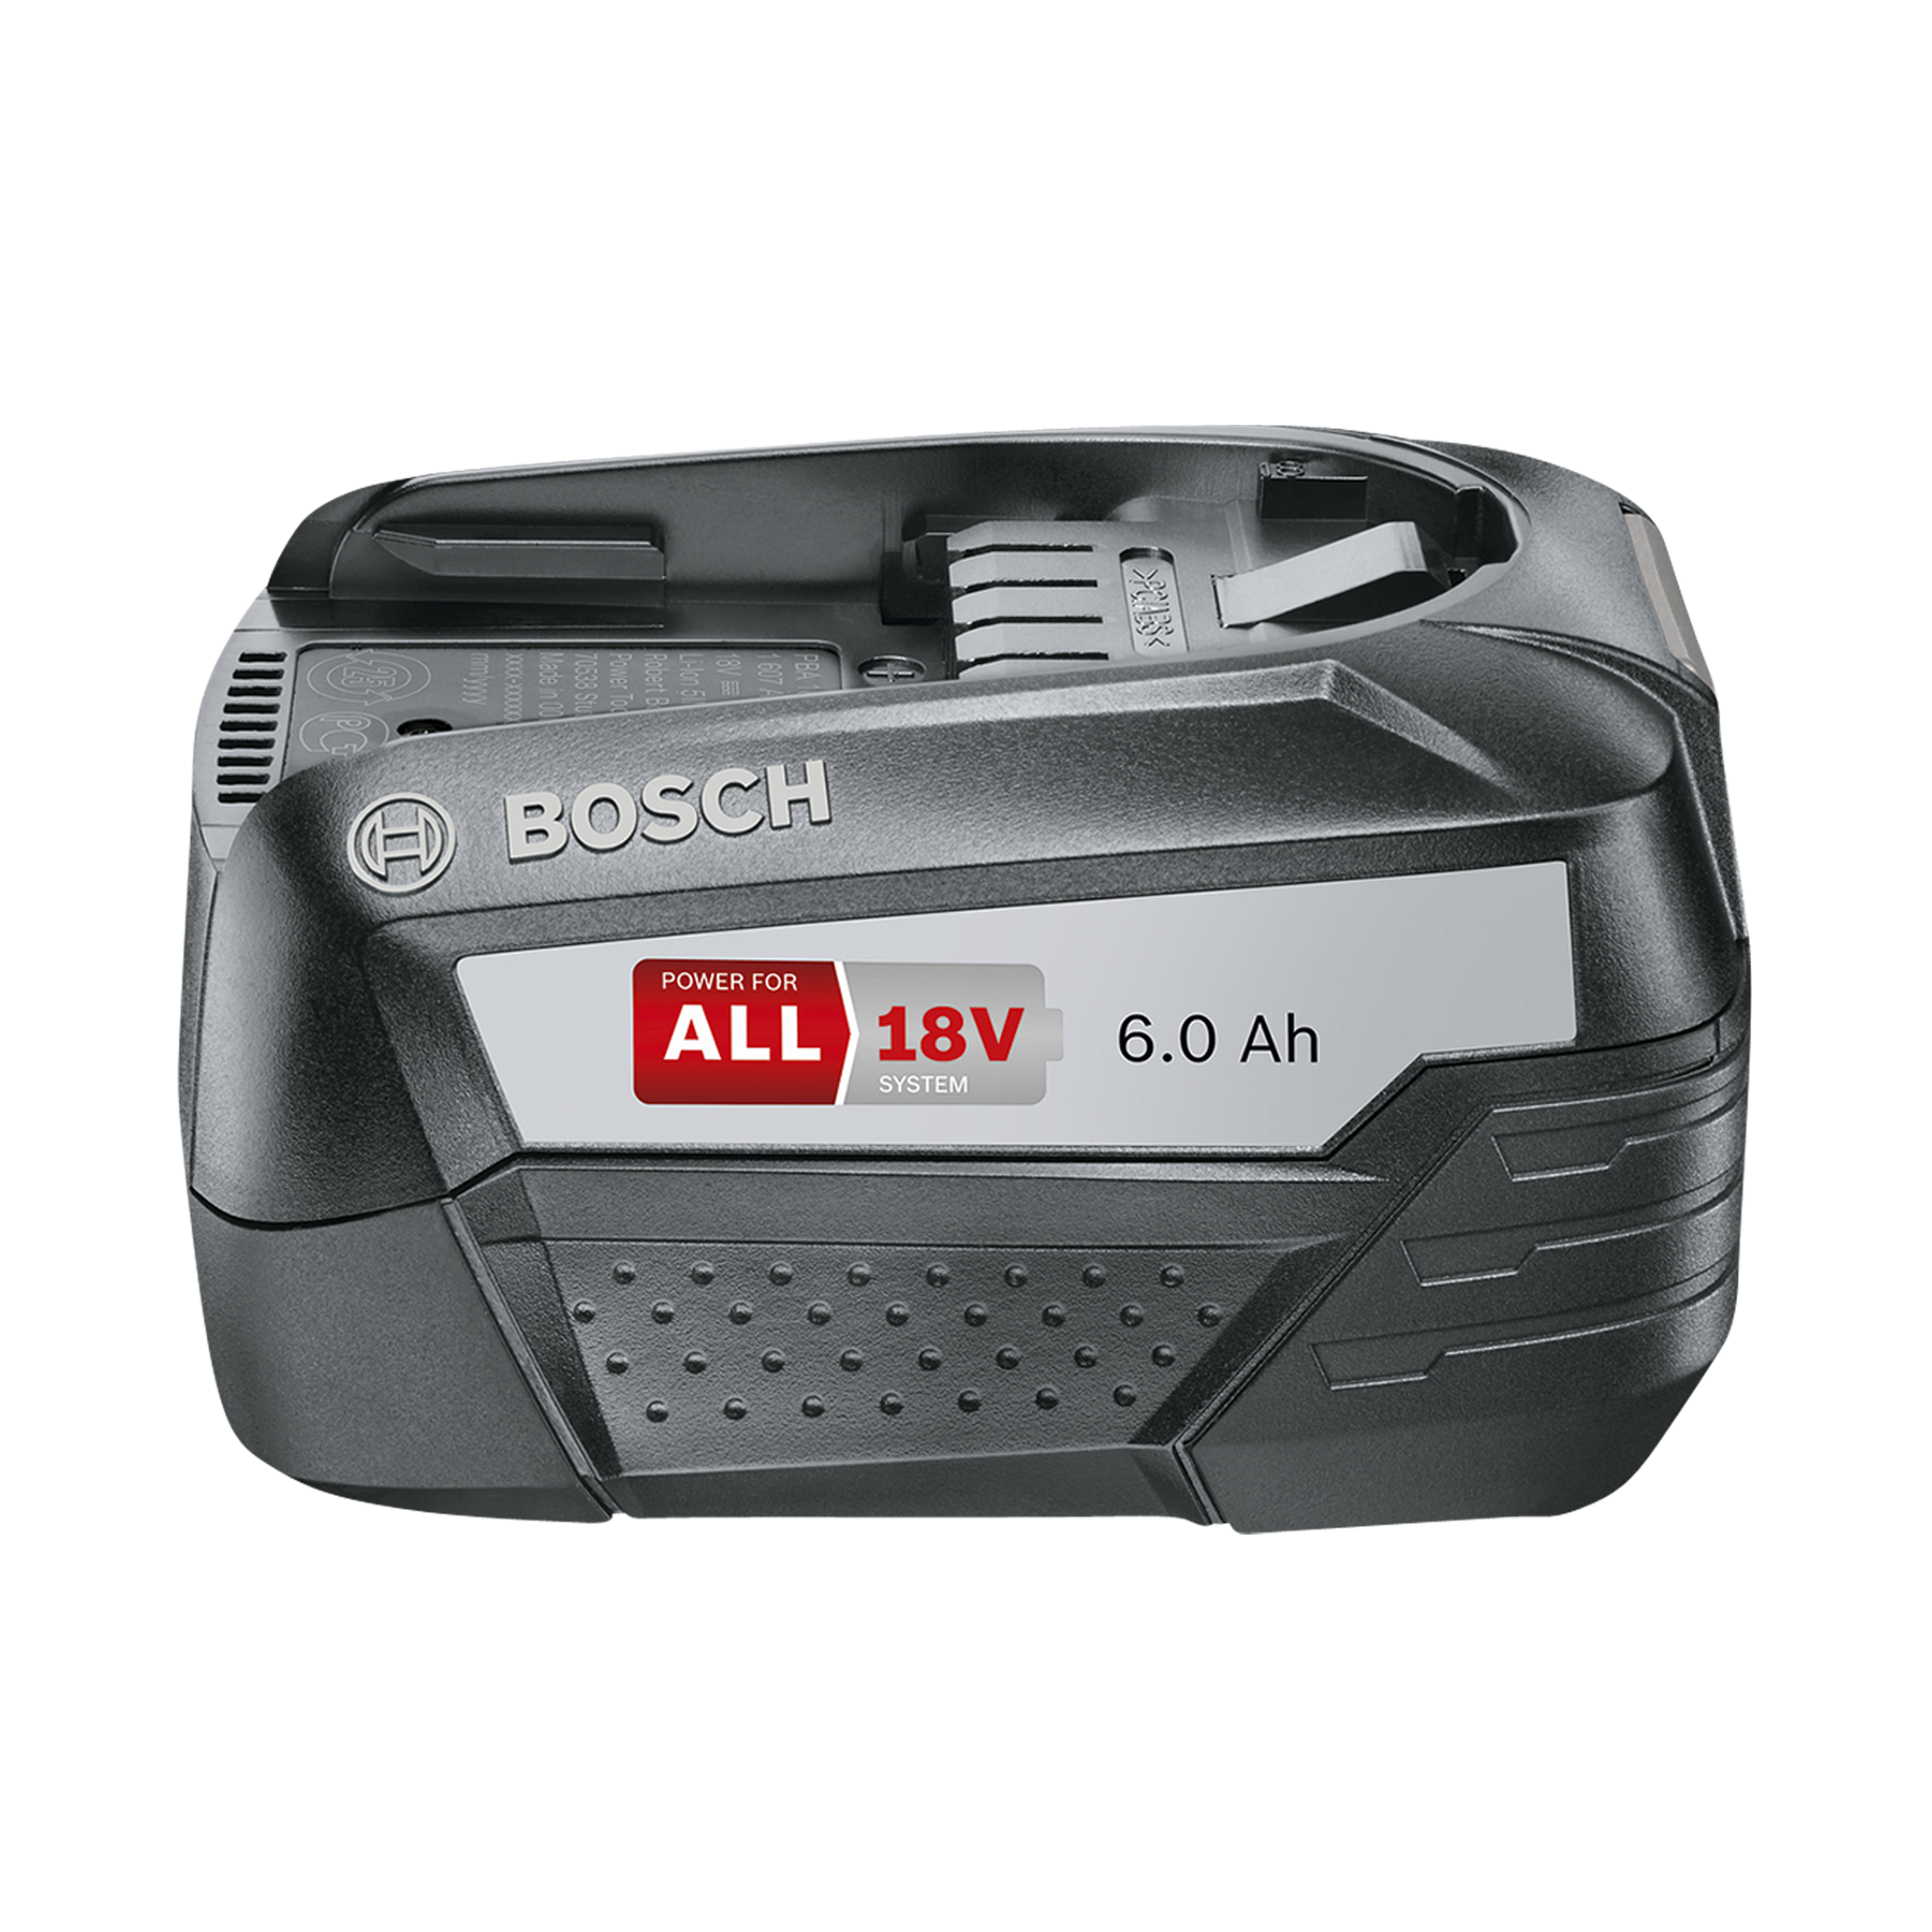 Купить аккумулятор для пылесоса бош. Аккумулятор Bosch PBA 18v. Аккумулятор Bosch Power for all 18 в. Аккумулятор Bosch 18v 5.0Ah li-ion. Bosch Power for all 18v аккумулятор.